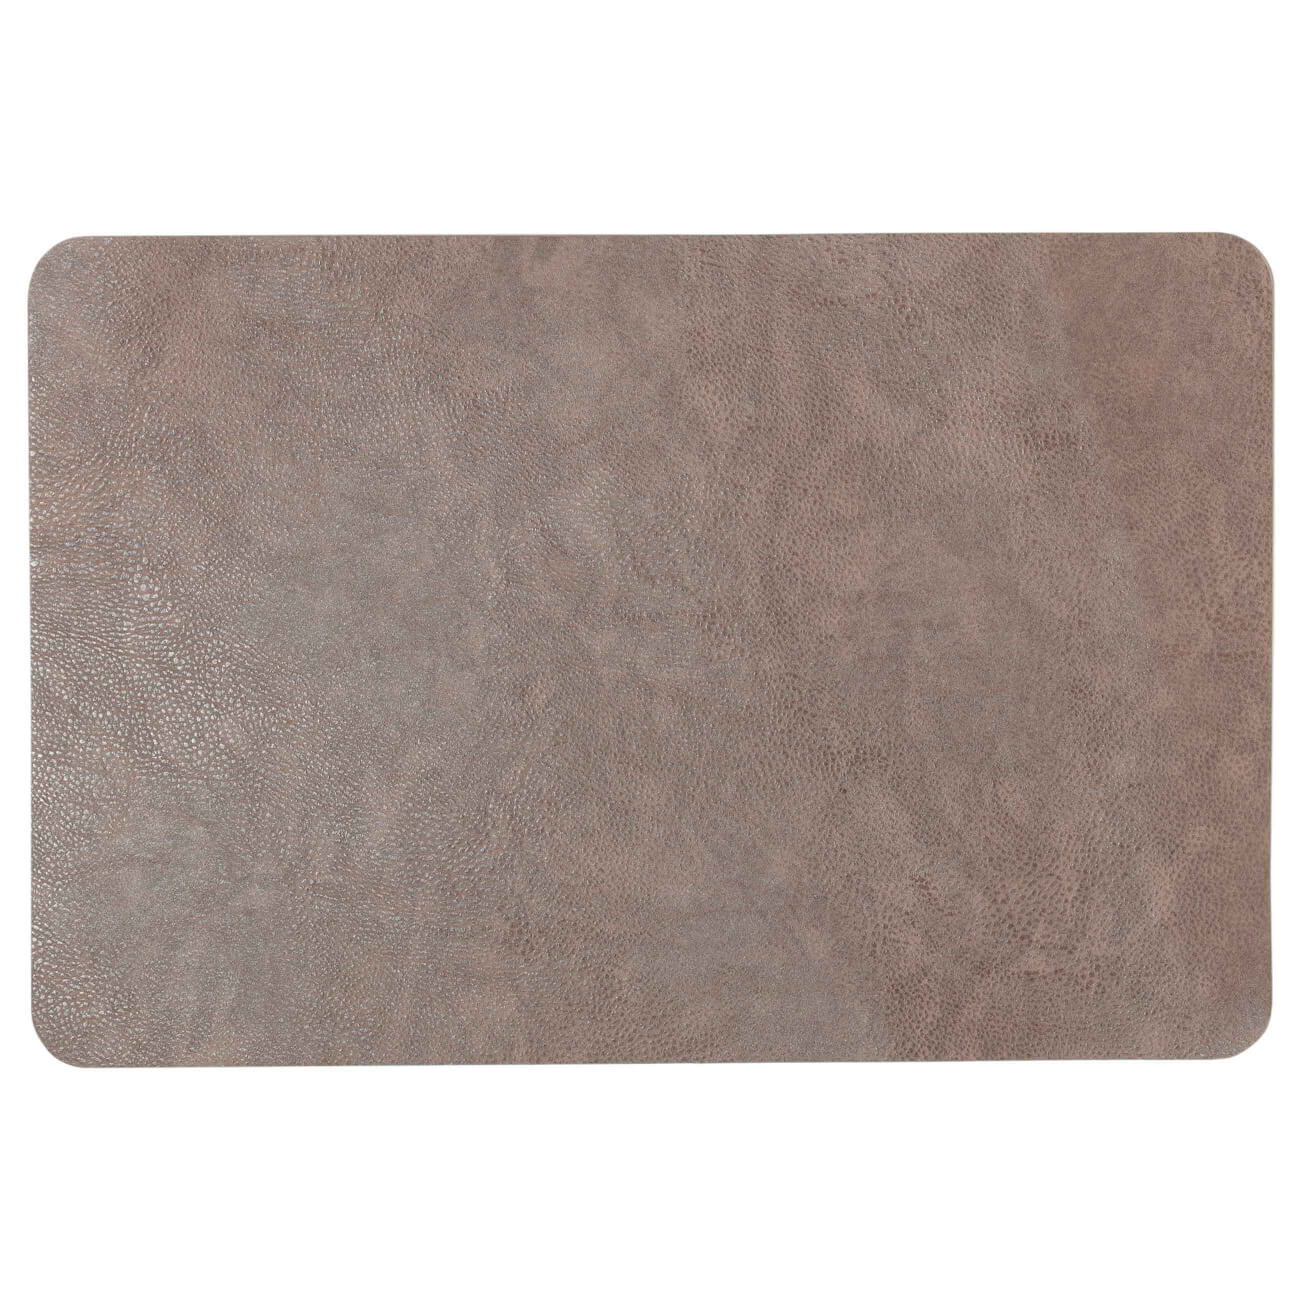 Салфетка под приборы, 30х45 см, ПВХ, прямоугольная, коричневая, Rock изображение № 1